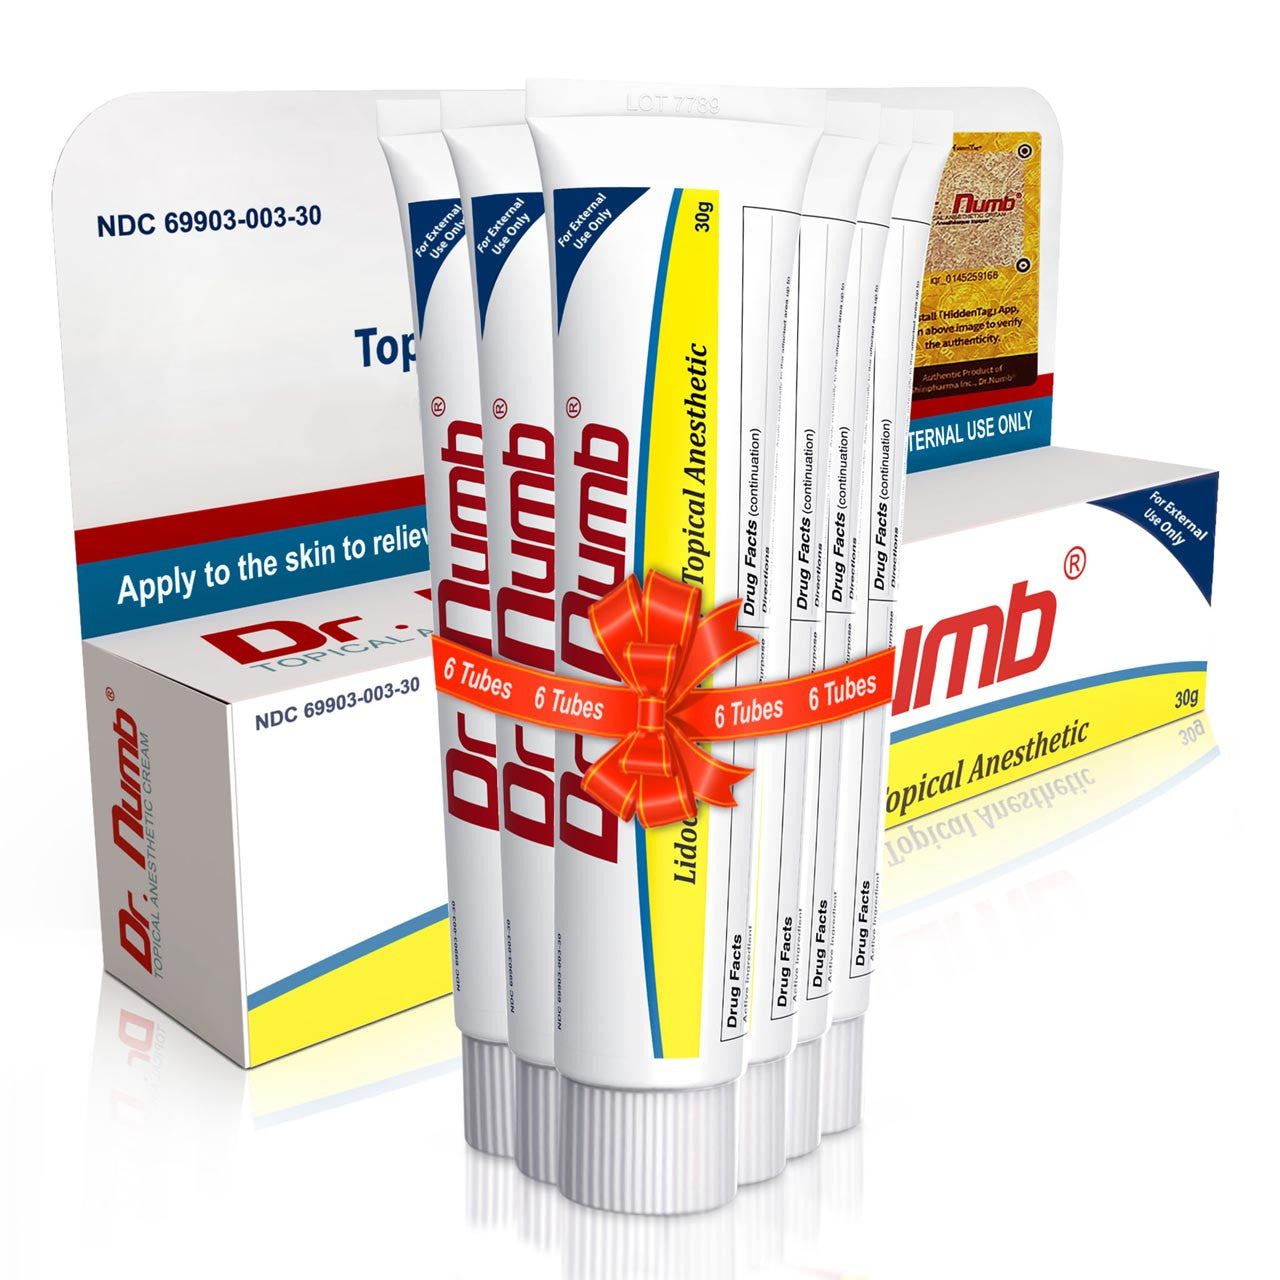 Dr. Numb® 4% Cream - 30g